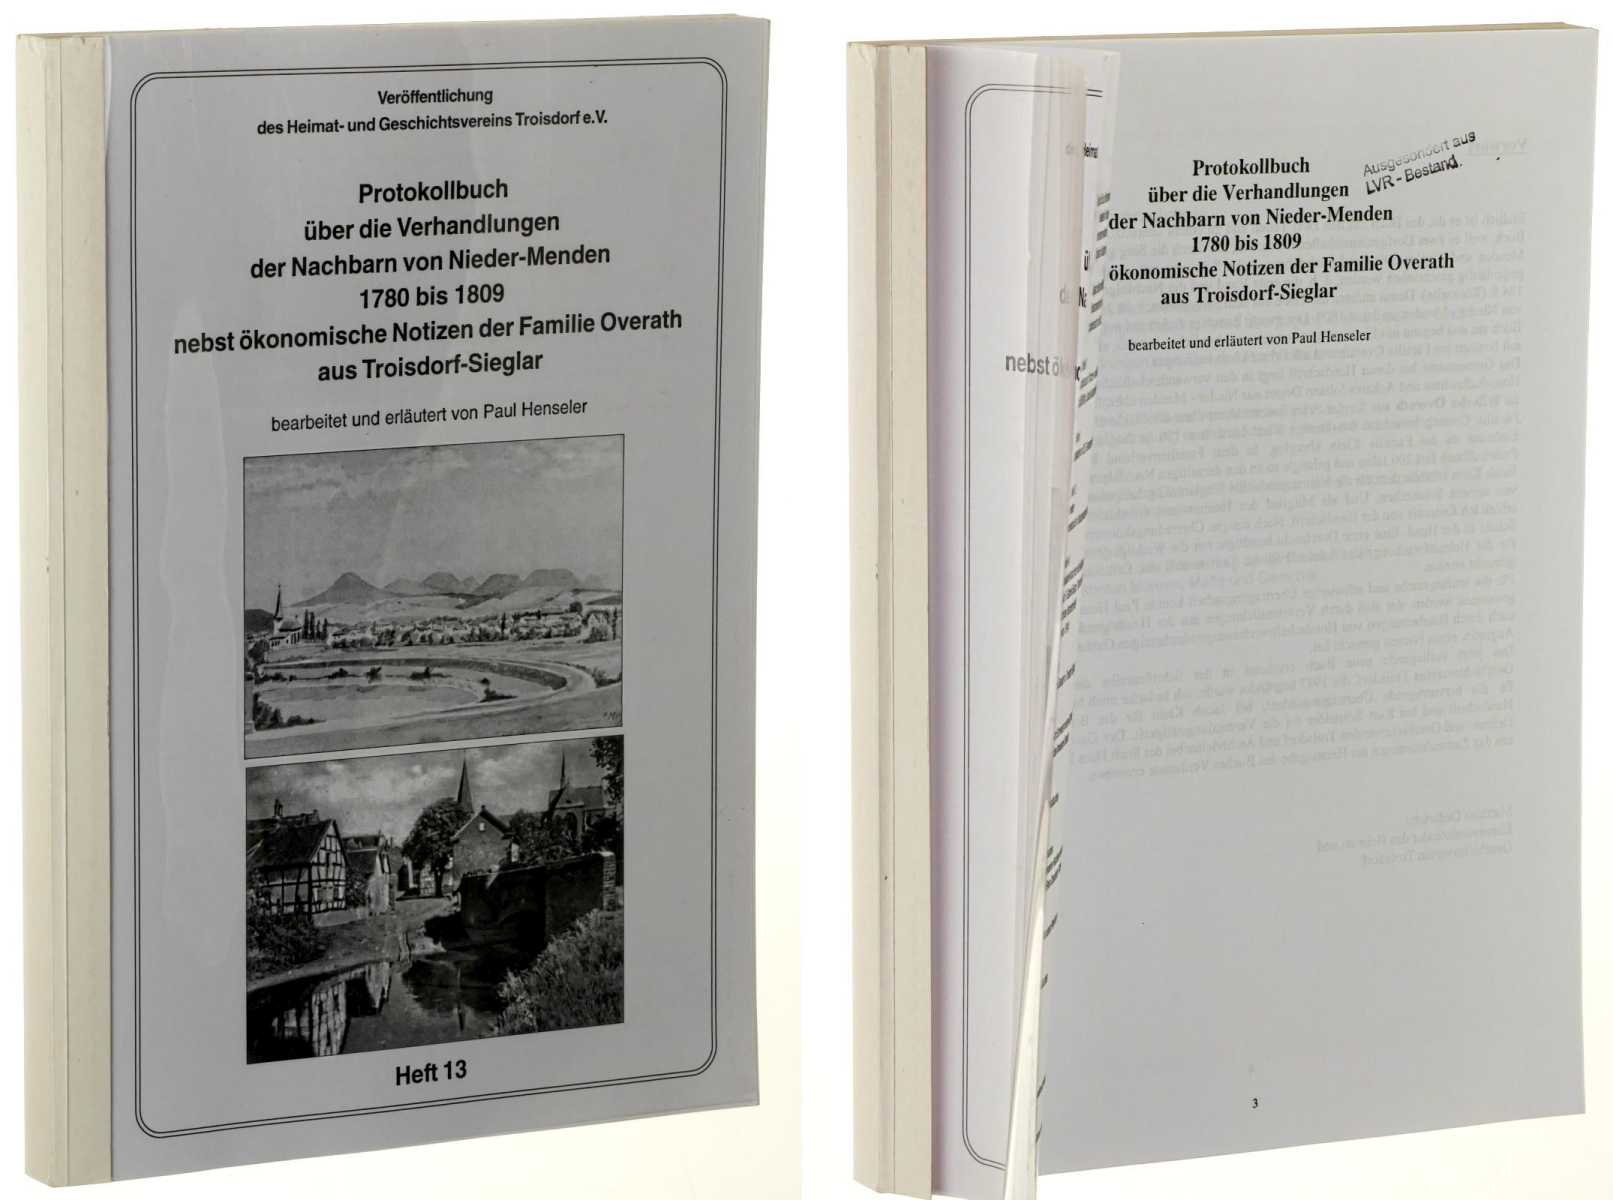   Protokollbuch über die Verhandlungen der Nachbarn von Nieder-Menden 1780 bis 1809 nebst ökonomischen Notizen der Familie Overath aus Troisdorf-Sieglar. 